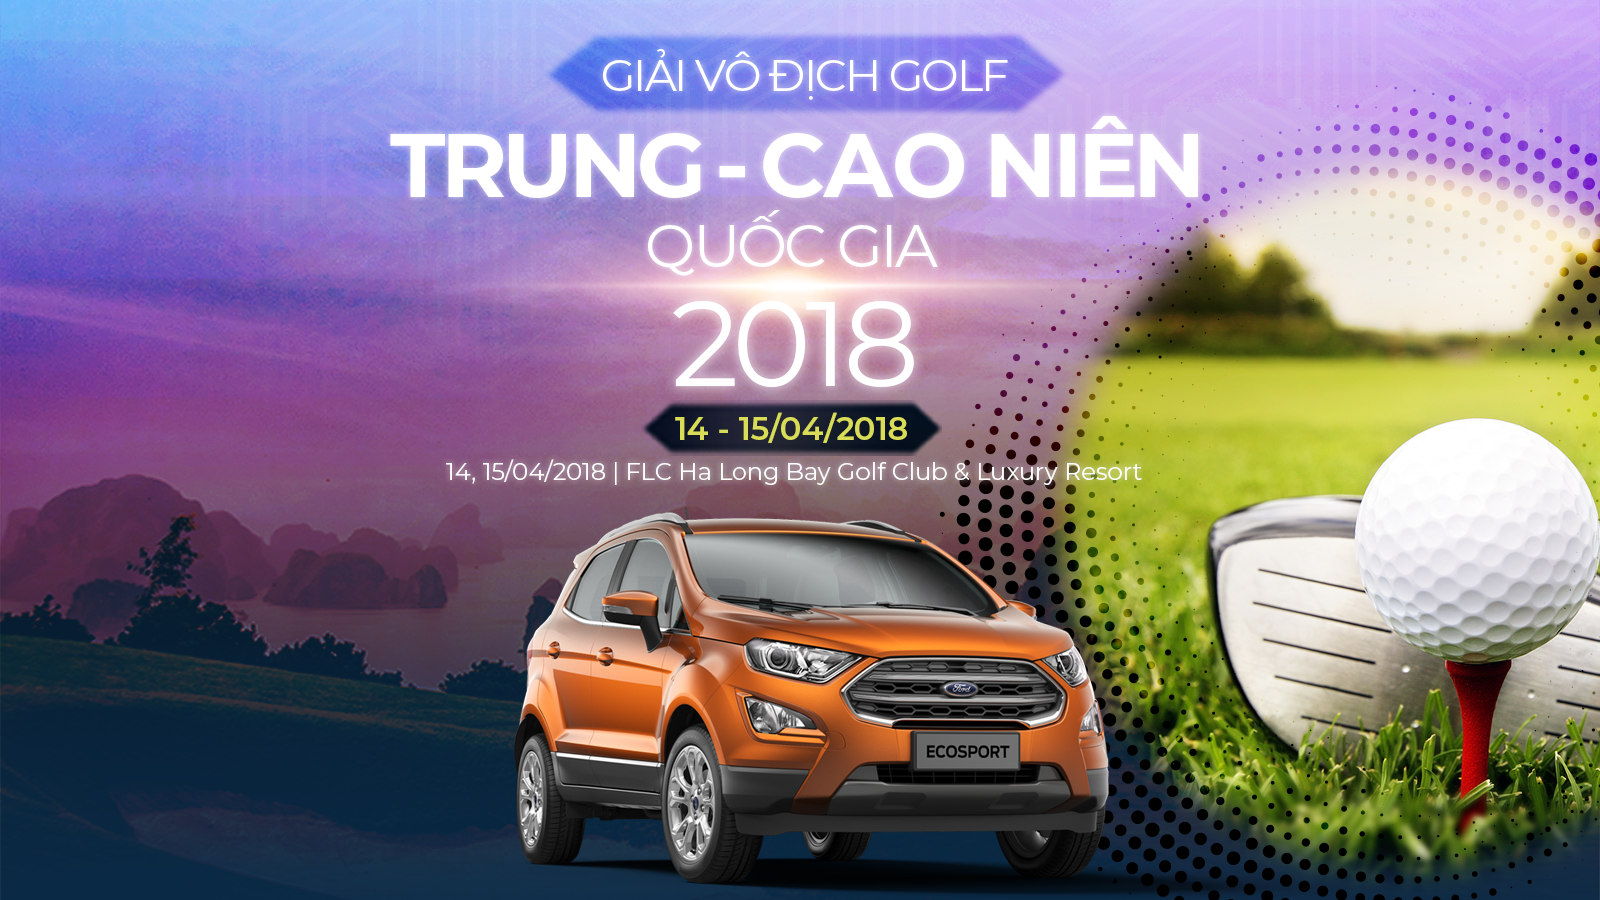 Giải vô địch golf Trung - Cao niên Quốc gia 2018: Diễn ra vào tháng Tư tại sân FLC Hạ Long